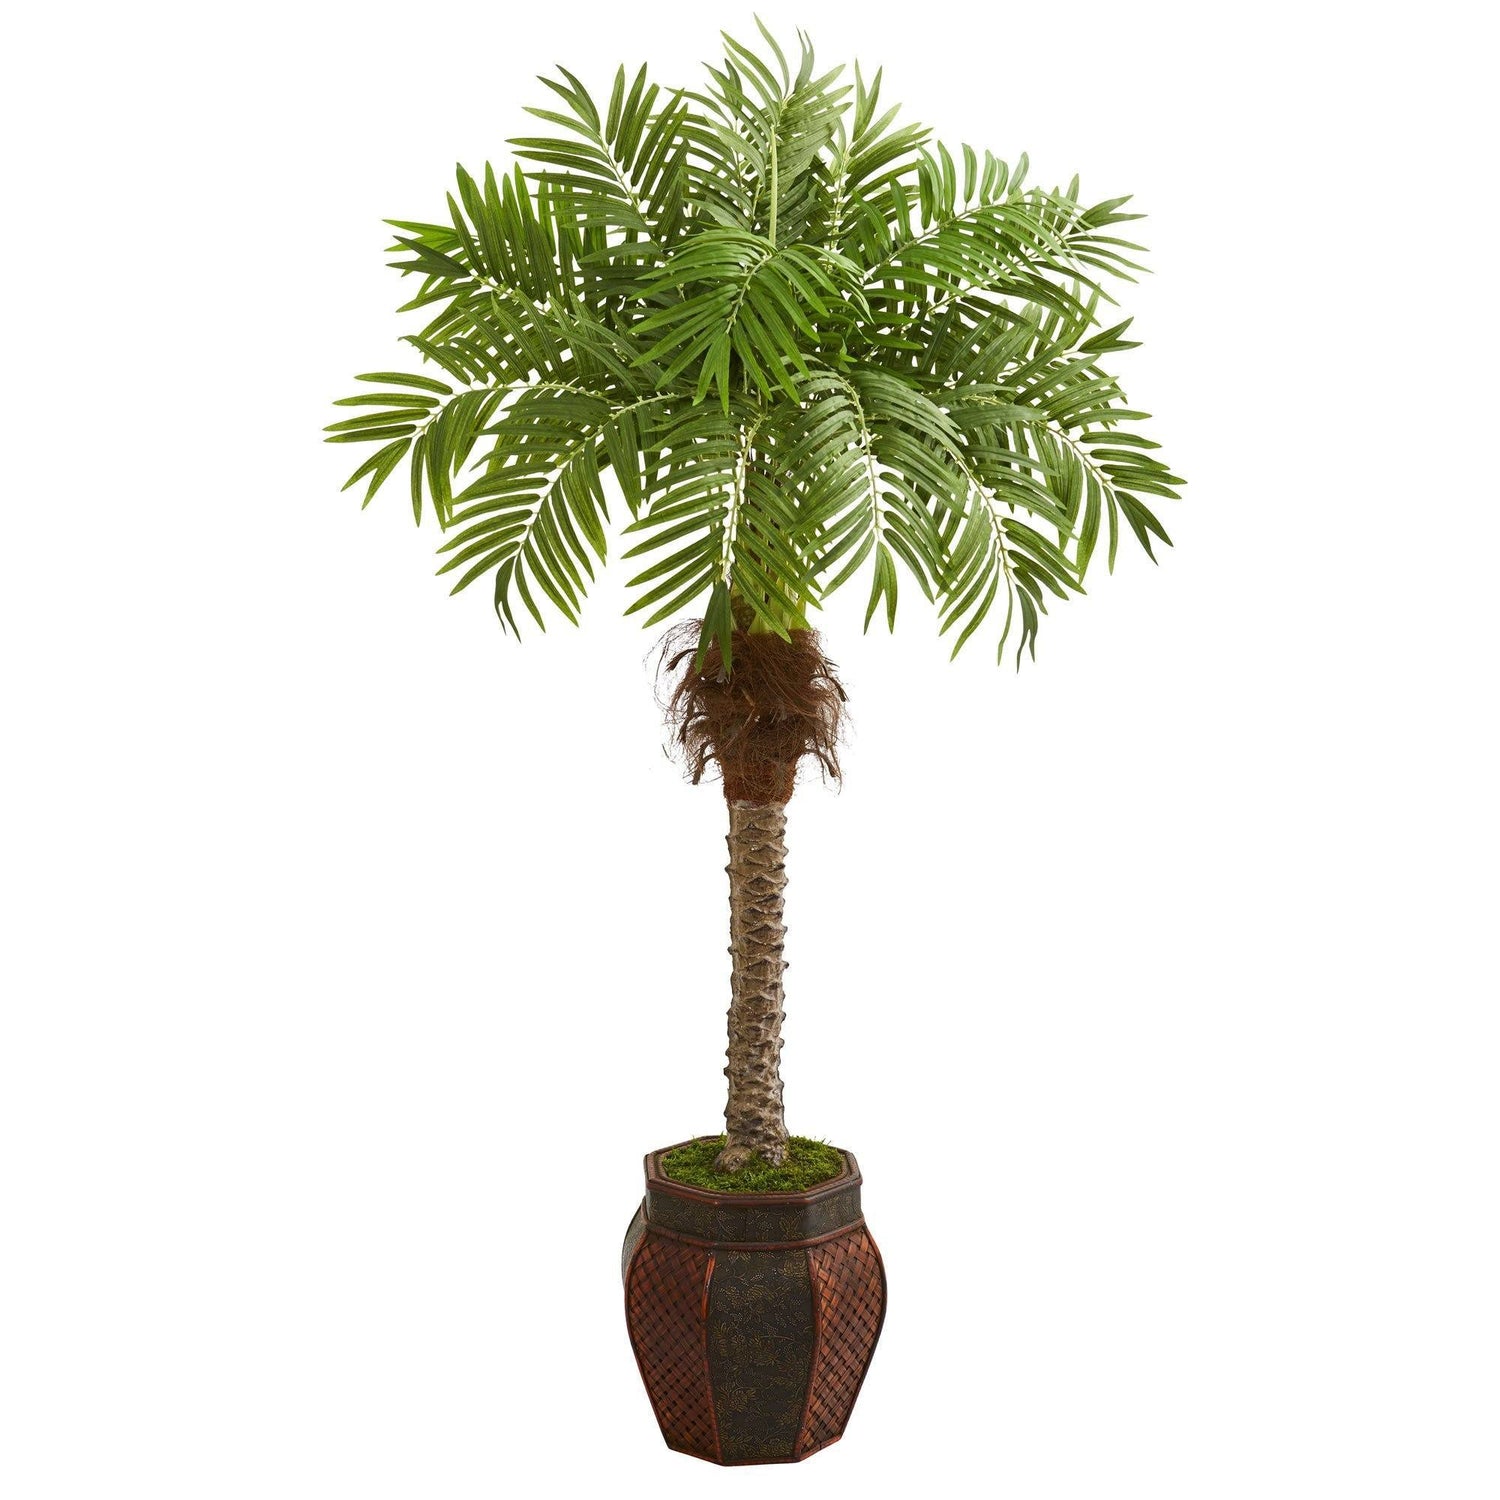 62” Robellini Palm Artificial Tree in Decorative Planter